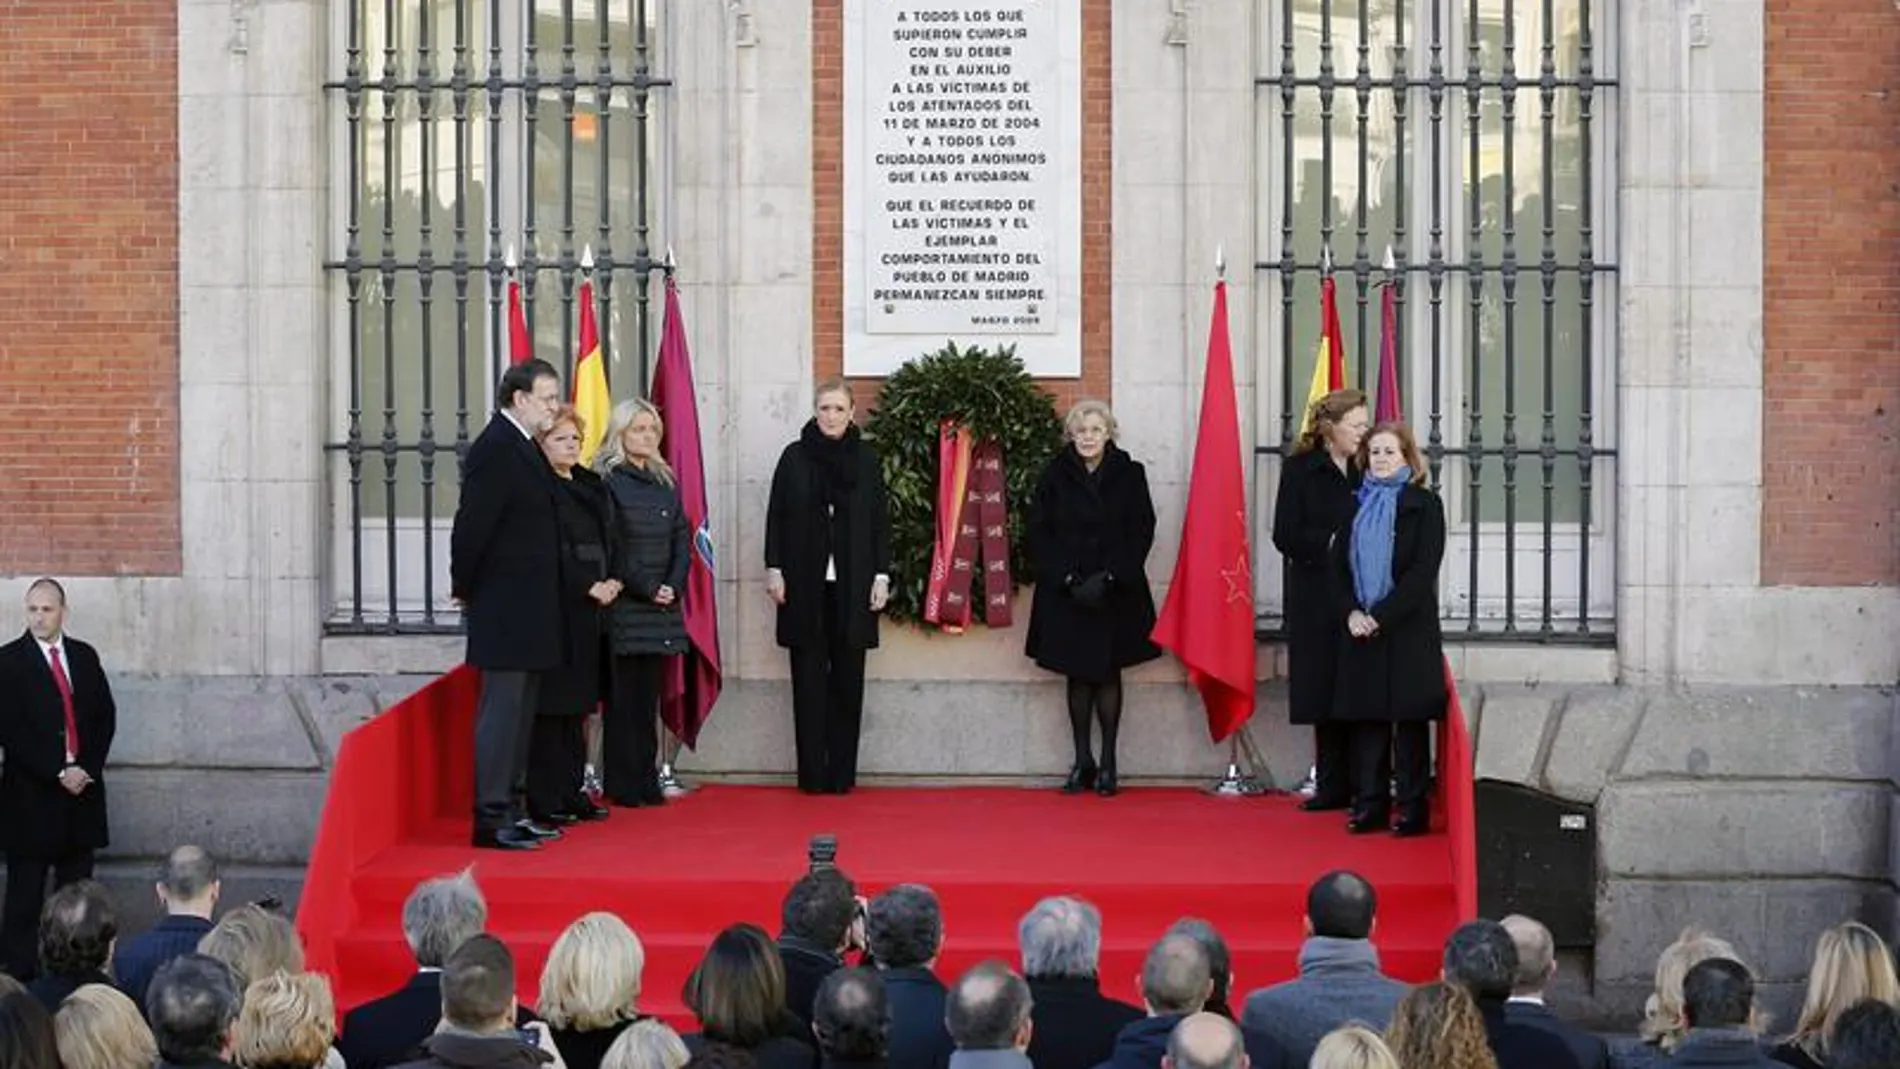 Las cuatro asociaciones de víctimas junto a Carmena, Cifuentes y Rajoy